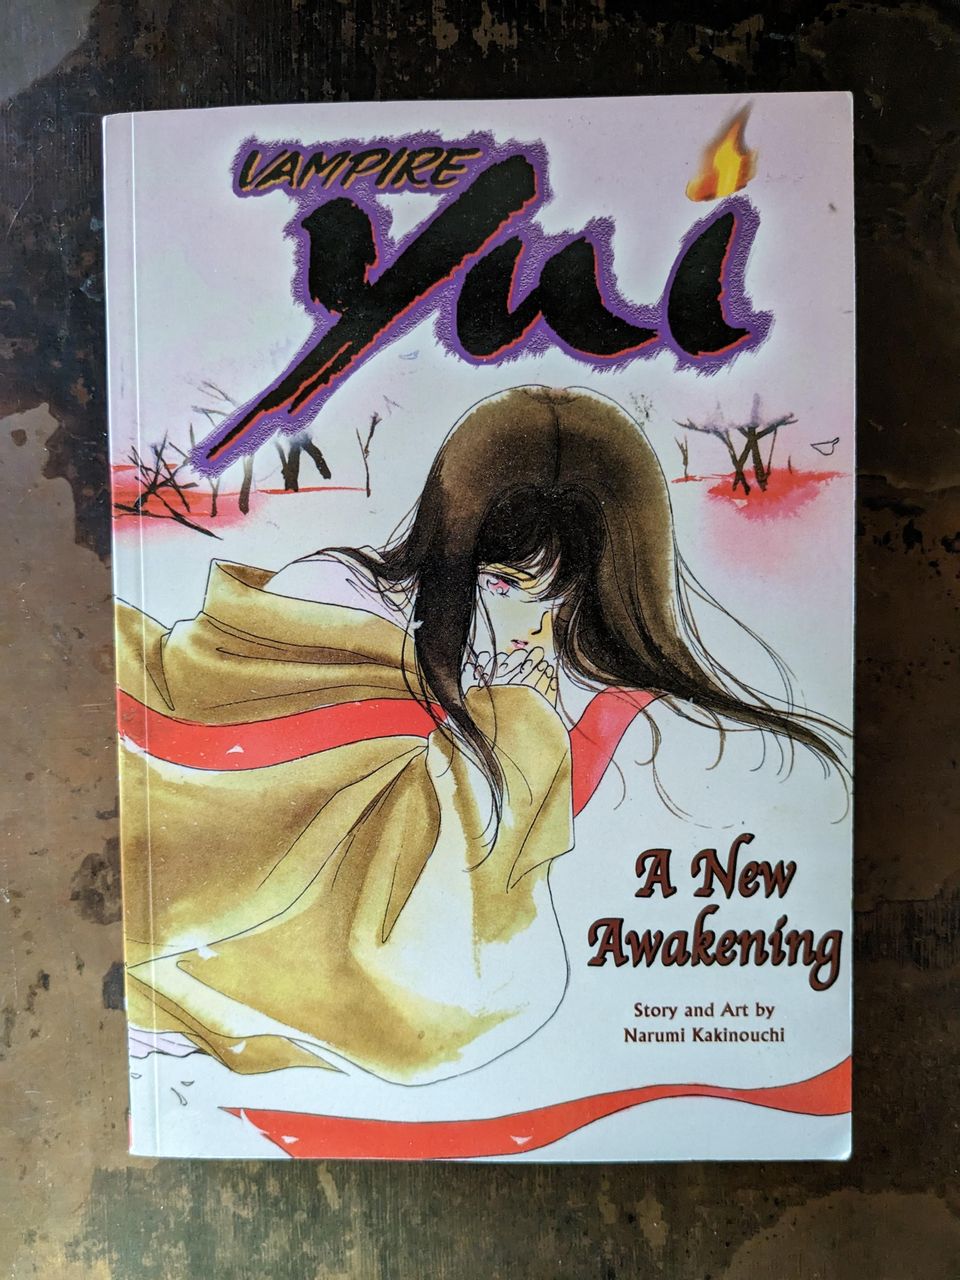 'Vampire Yui Vol. 1 - A New Awakening' manga / graphic novel